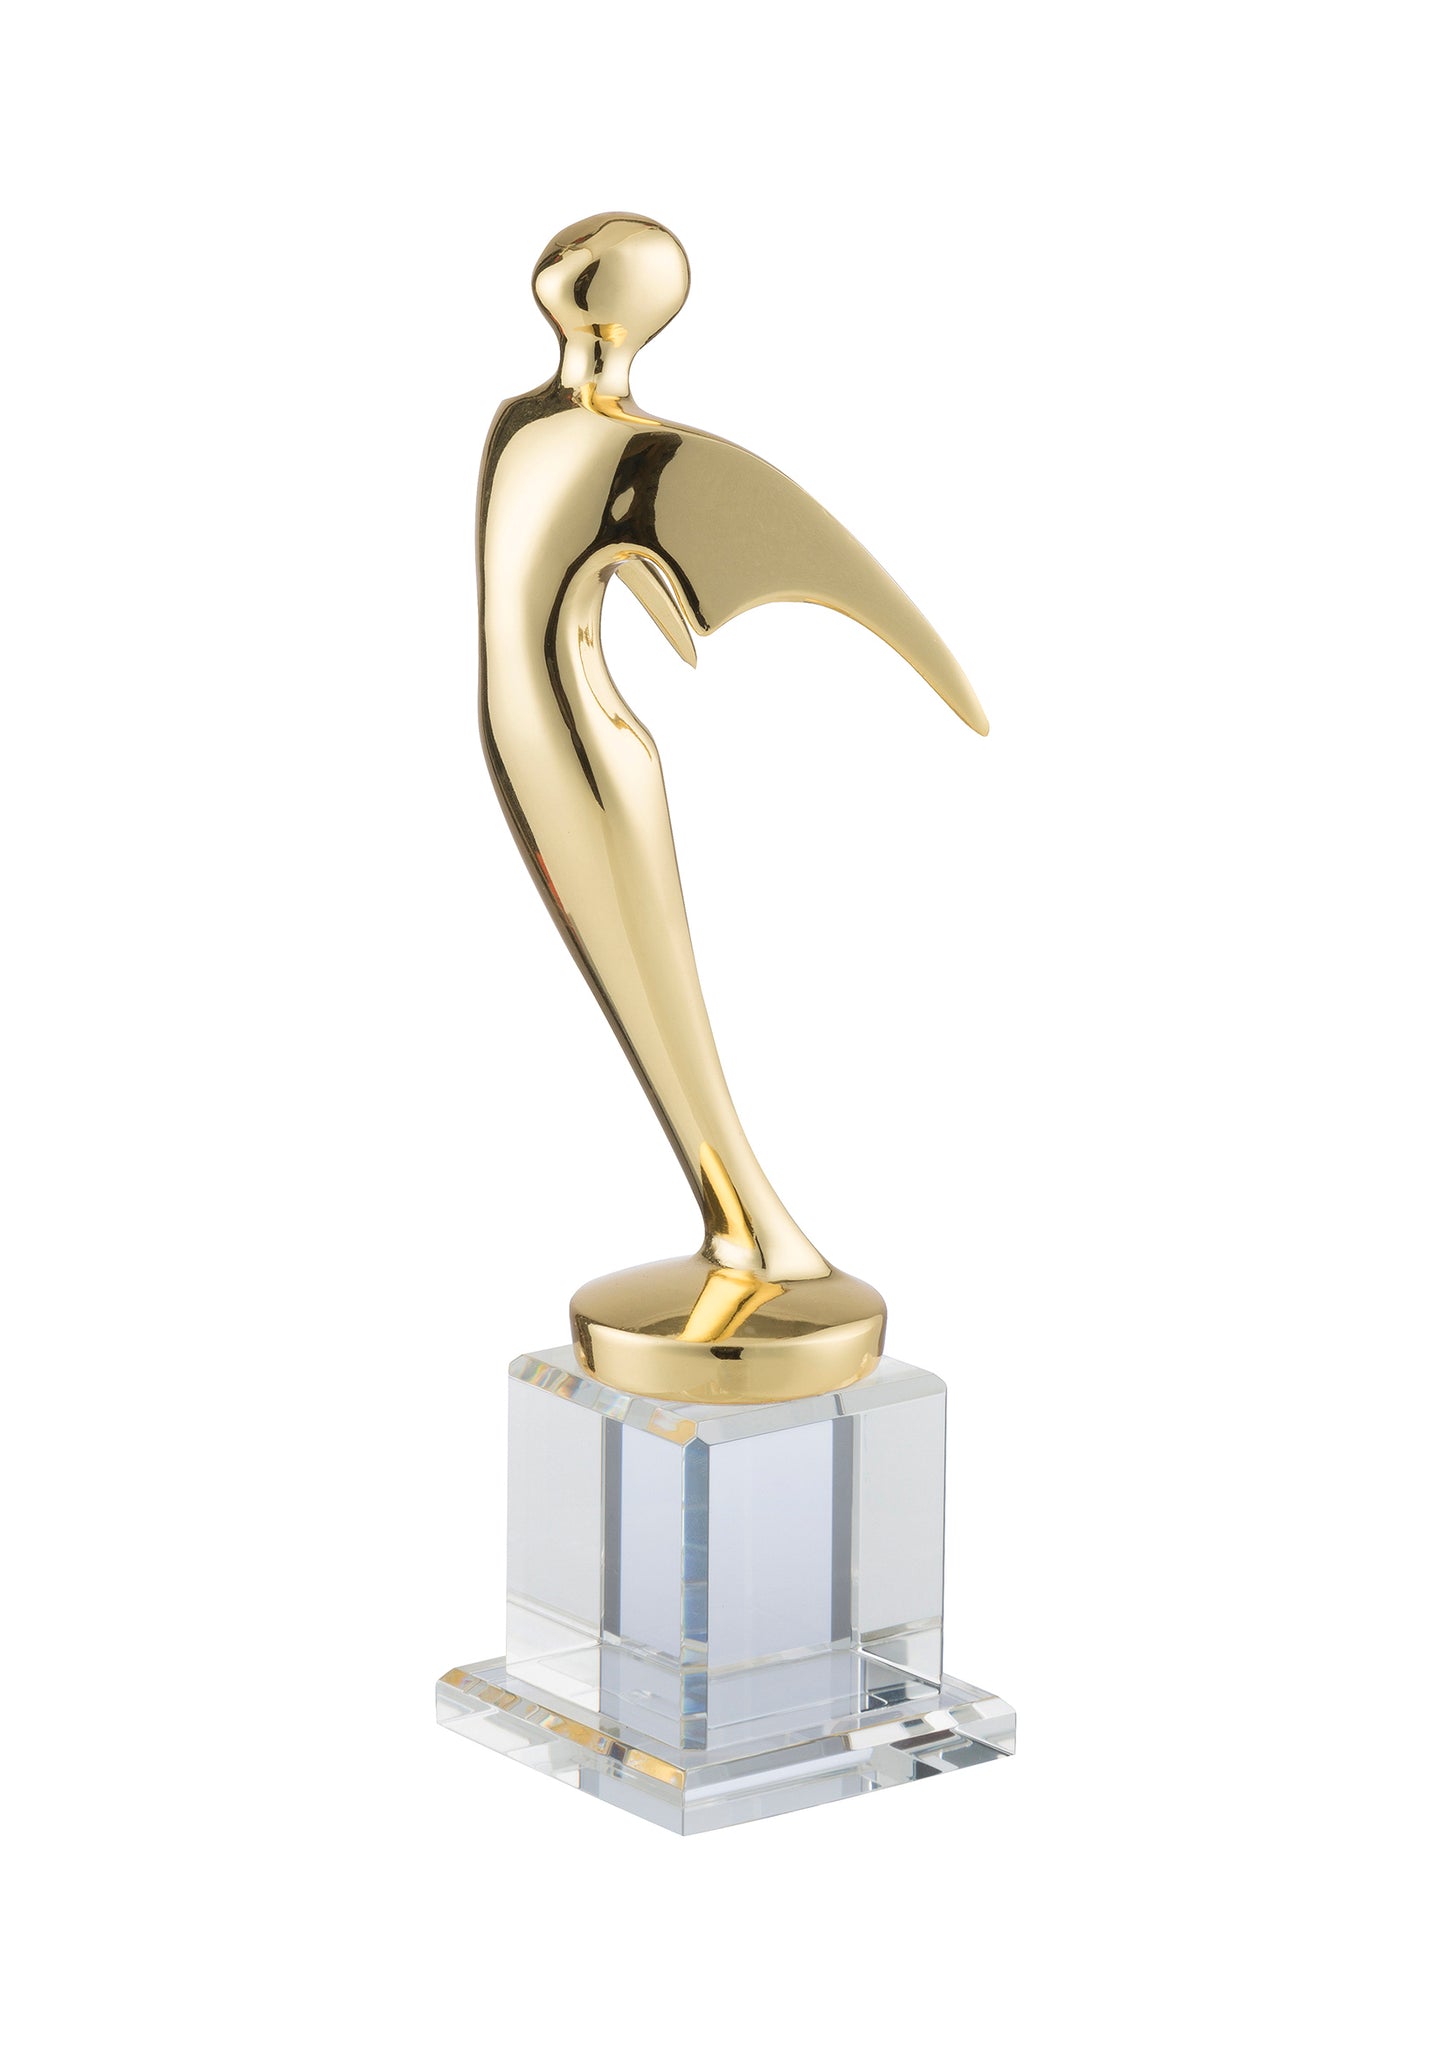 LG Metal Figure and Crystal Base Award